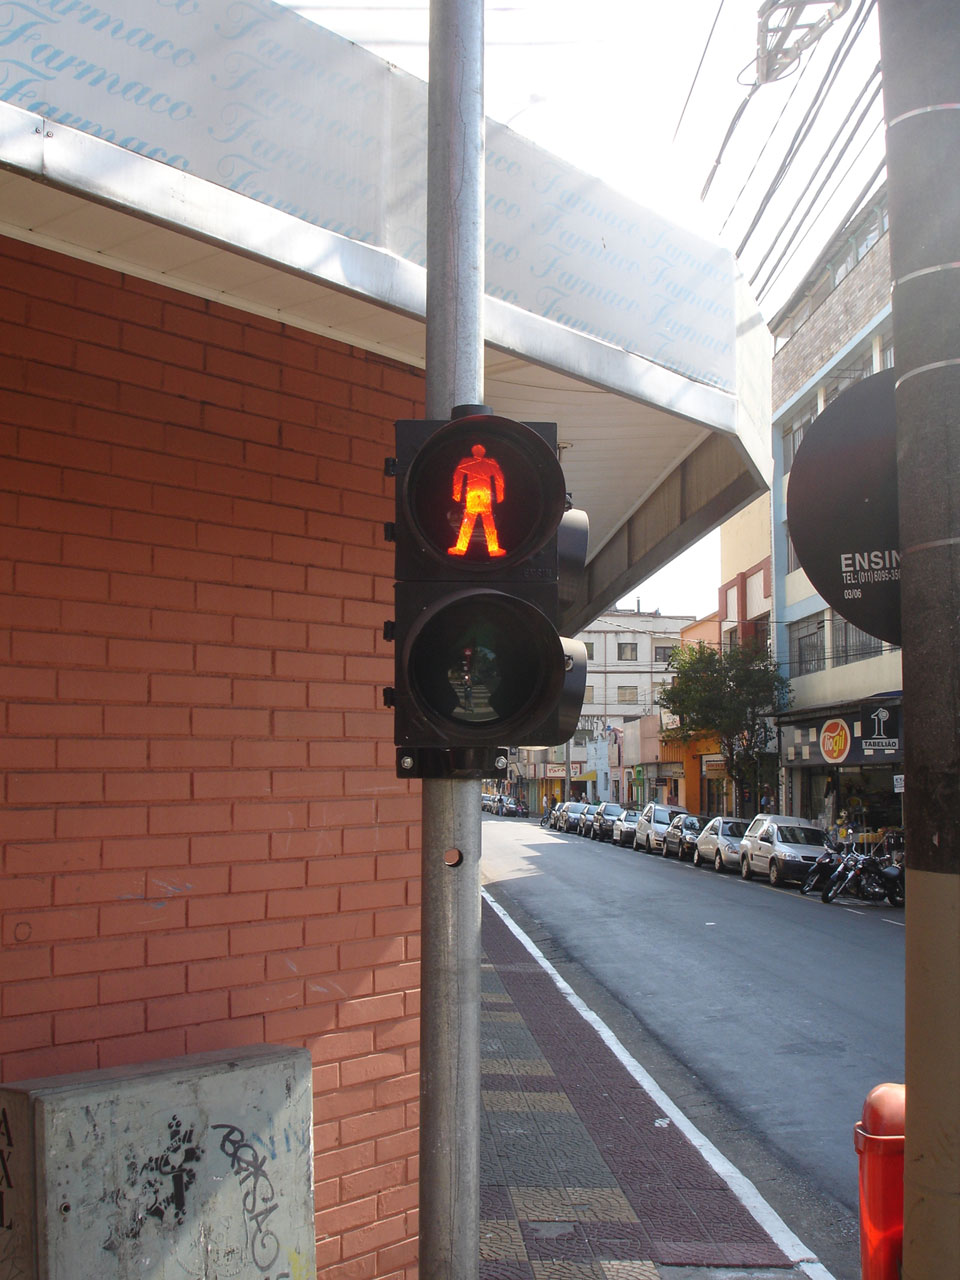 Pedestrian Signal stop